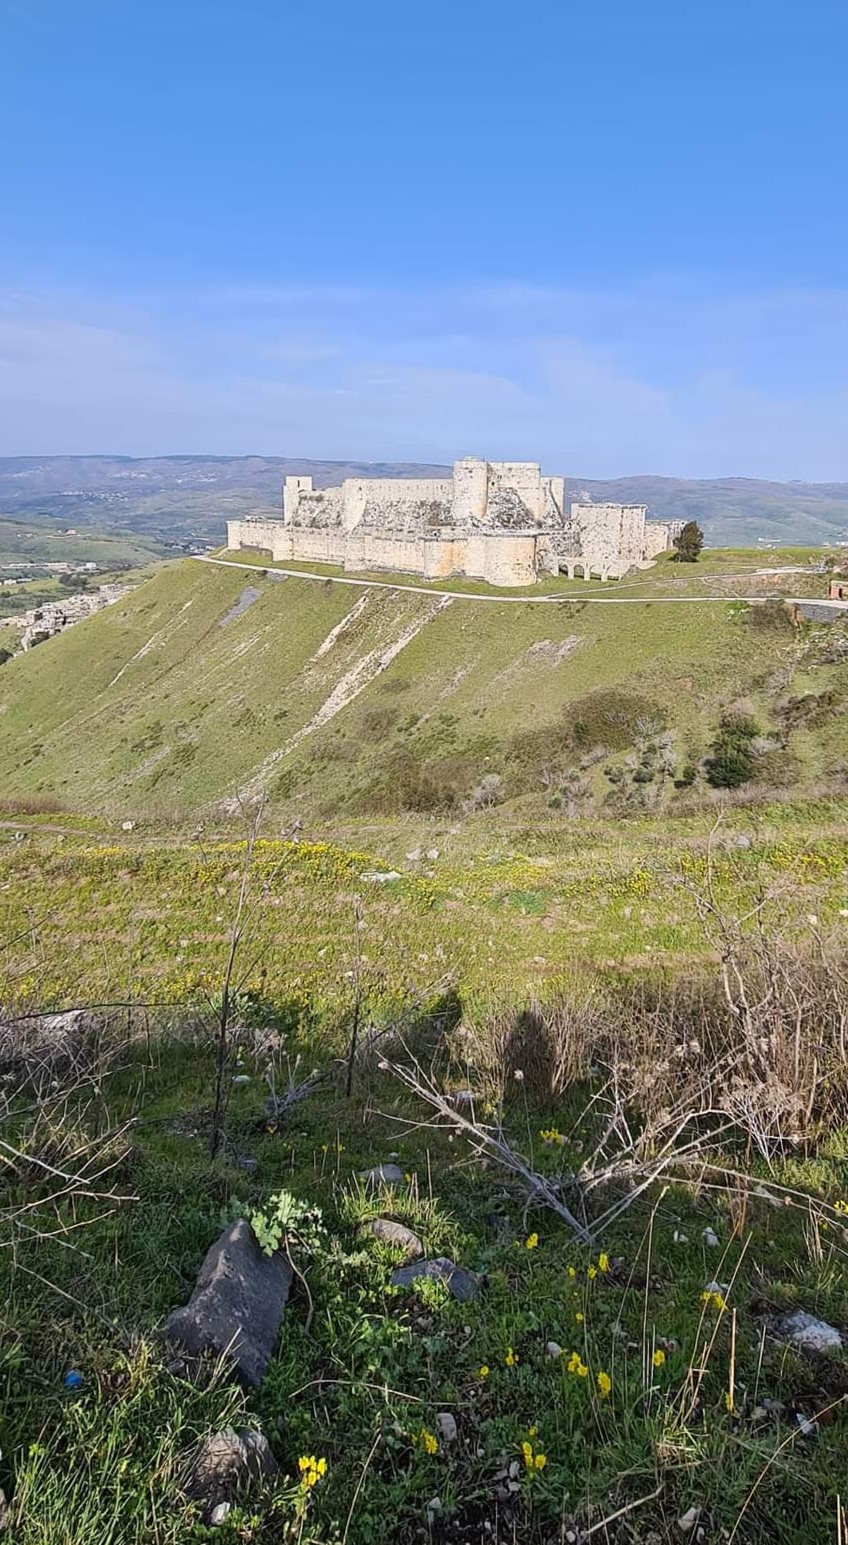 The castle on the hill Krak-des-Chevaliers